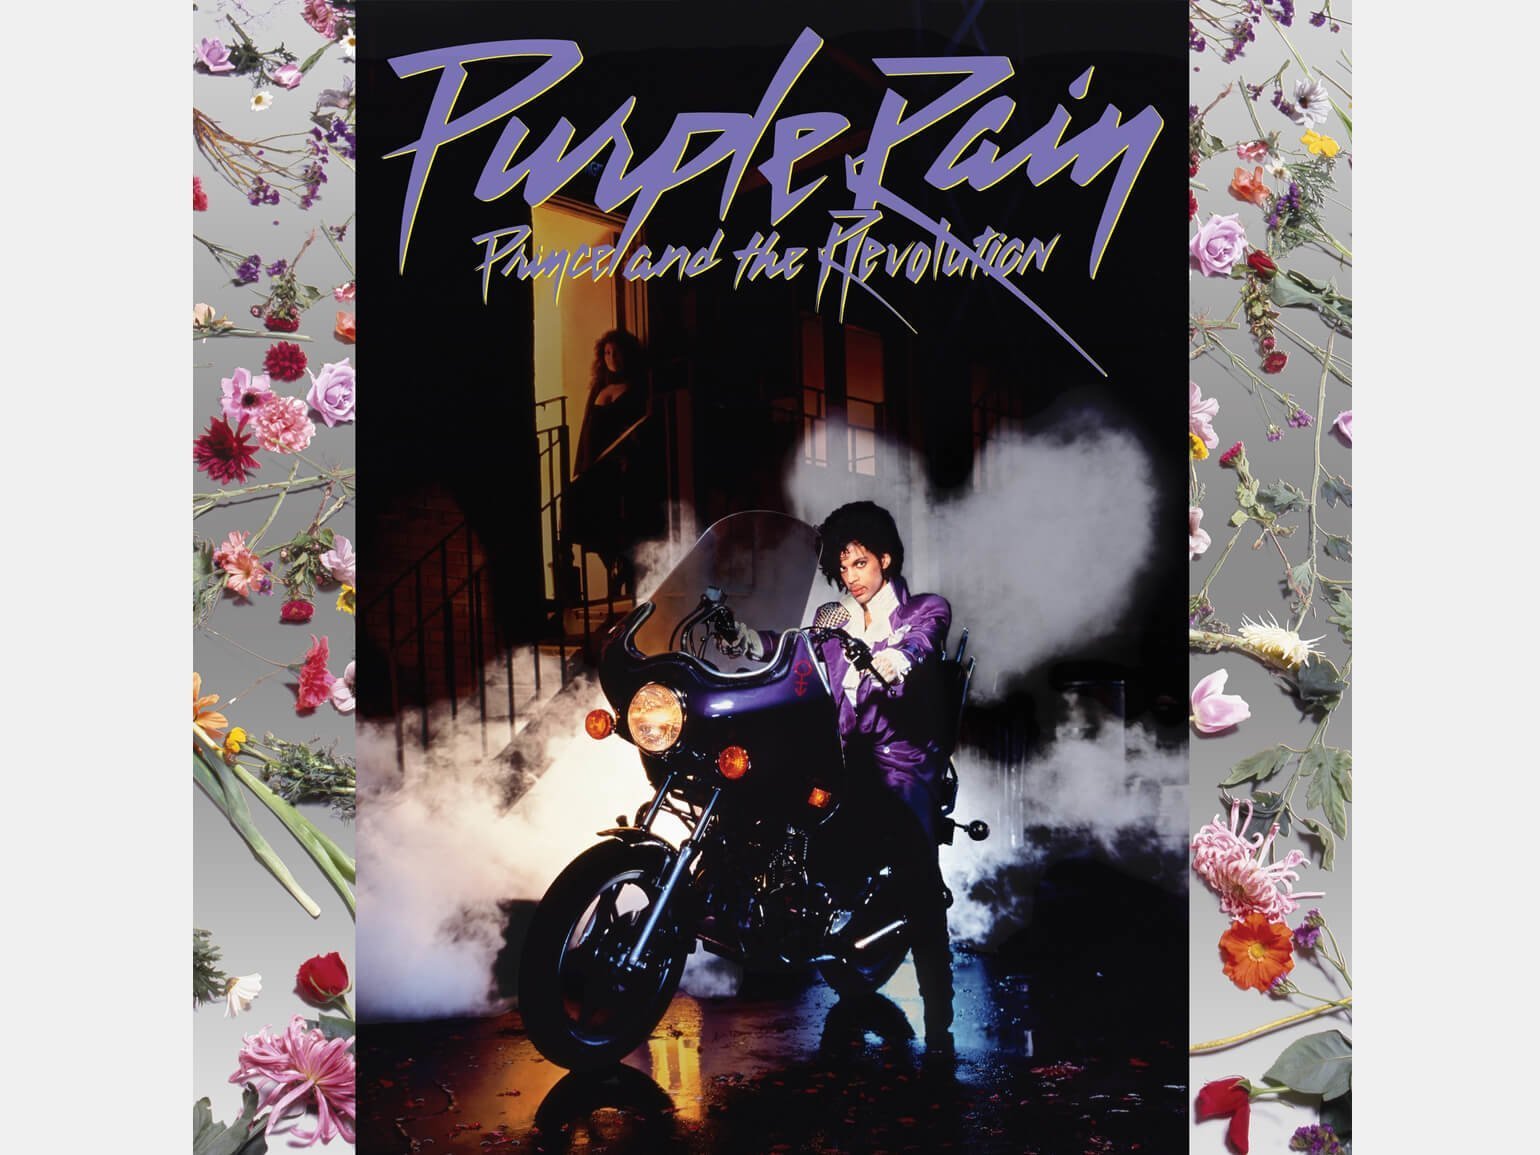 Фото в стиле американского панка: мужчина в фиолетовом костюме на мотоцикле фиолетового цвета, женщина спускается по лестнице в тени, за фотографией серый фон с астрами, герберами, тюльпанами, розами и ирисами